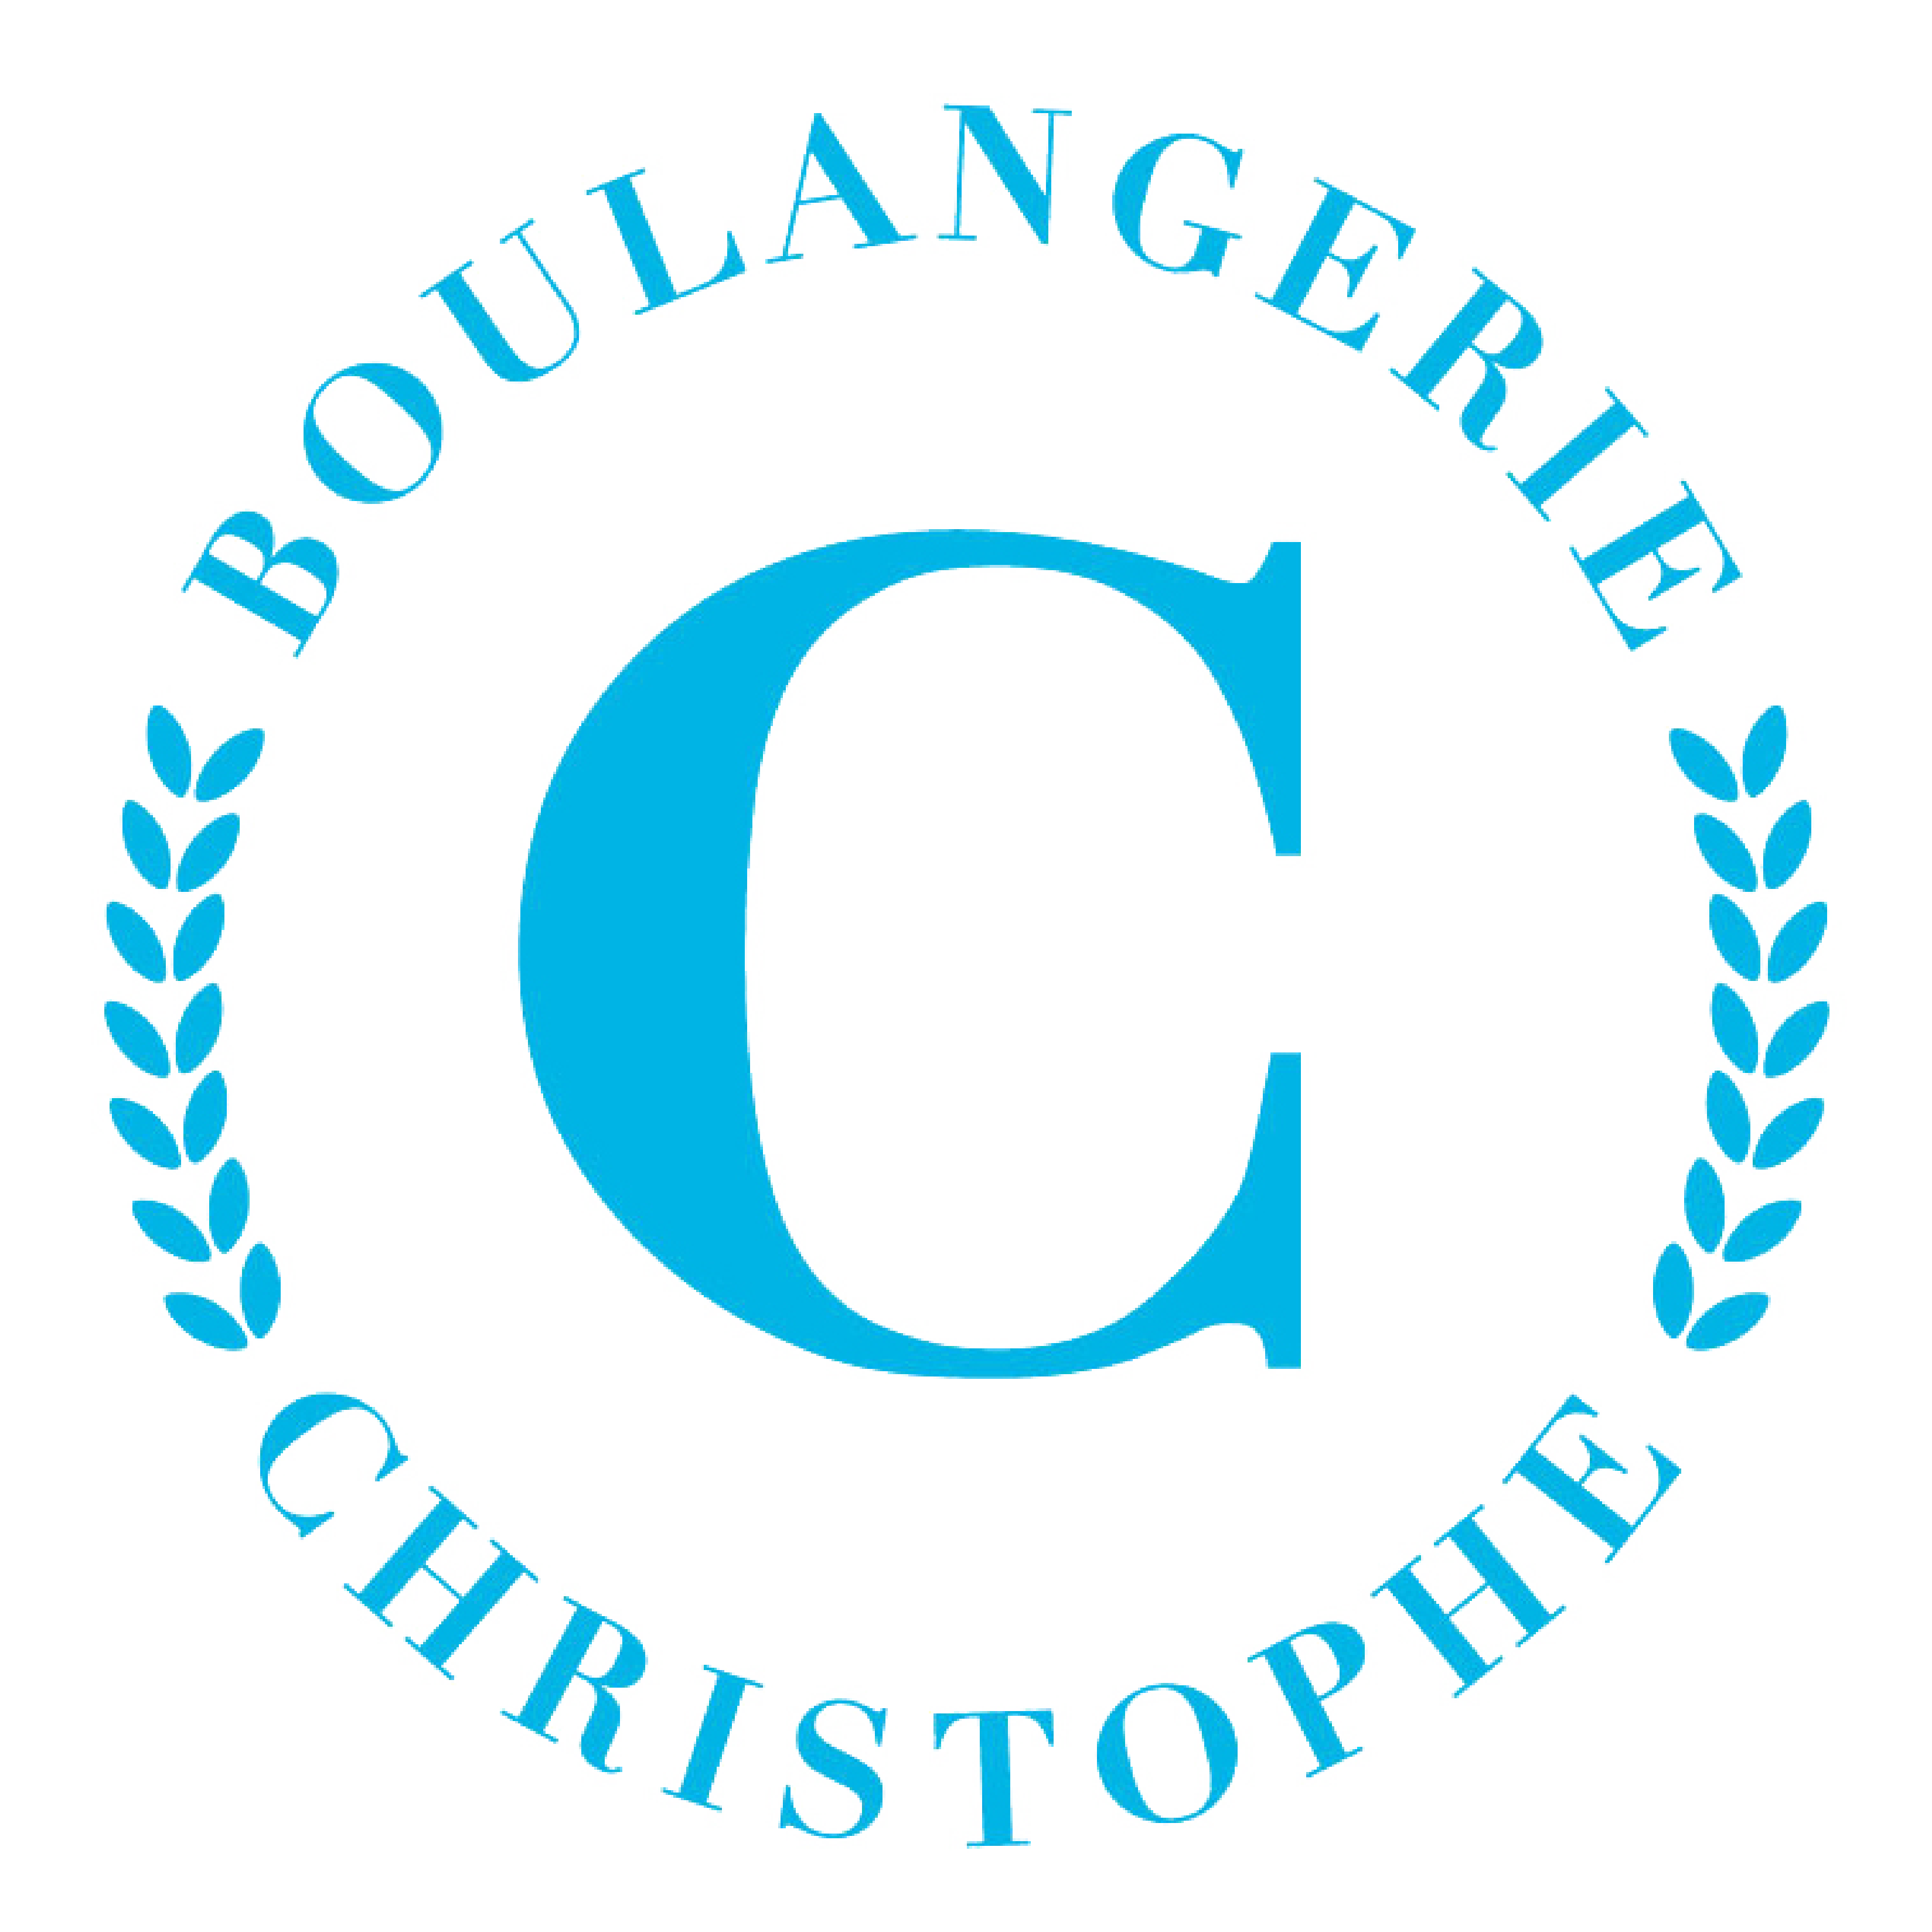 Boulangerie Christophe Logo. A C in the center with Boulangerie Christophe written around 